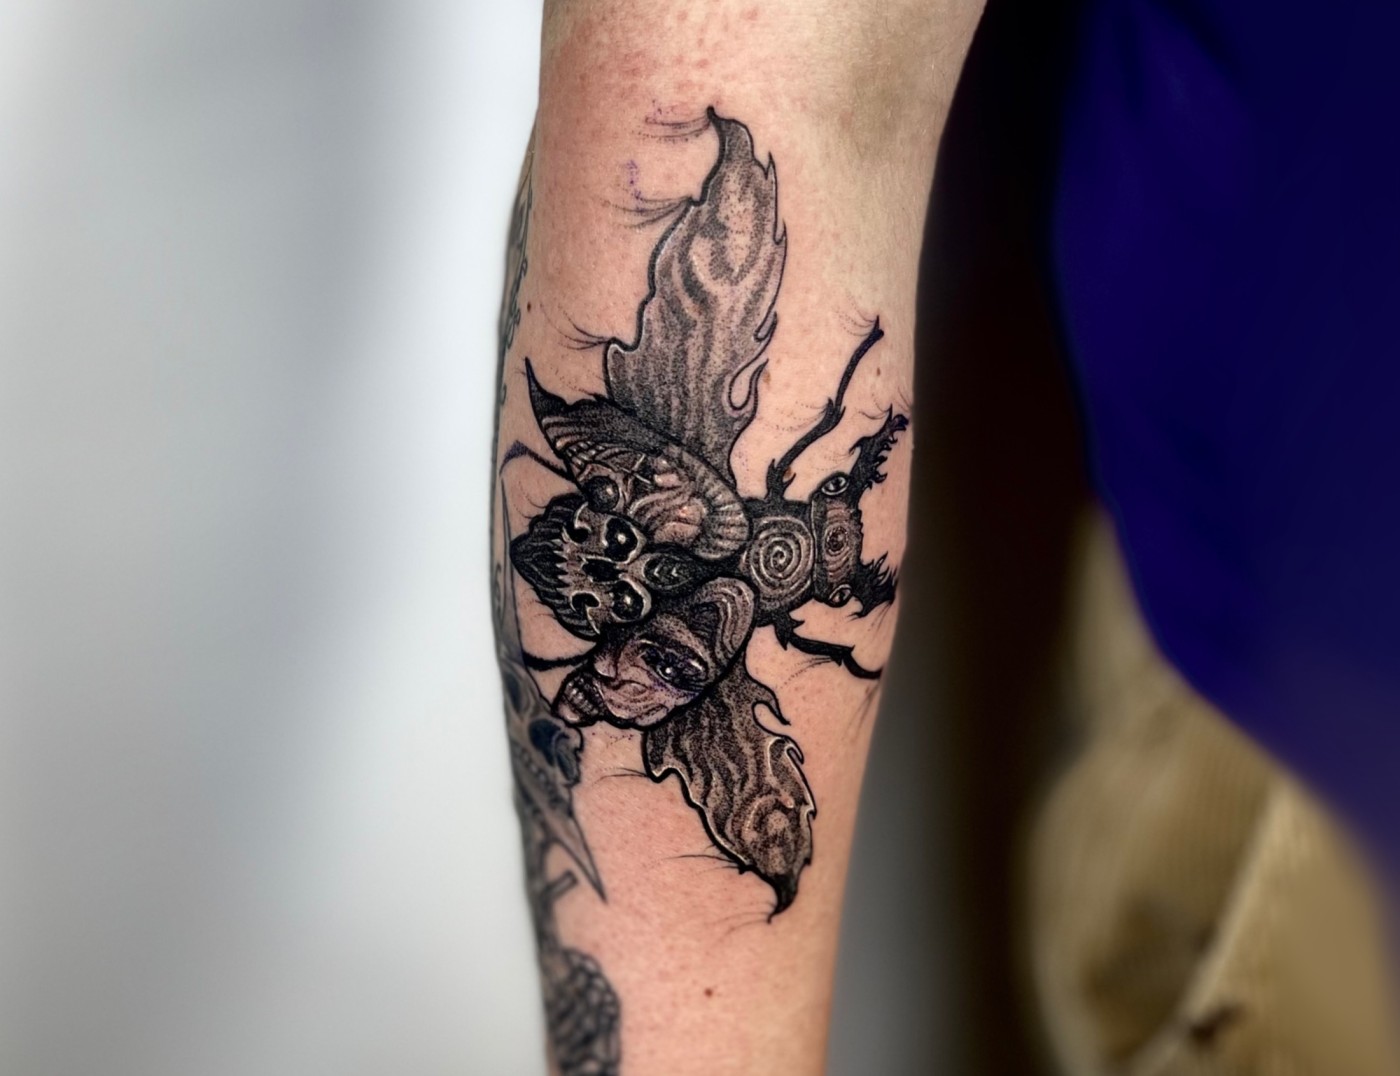 Love Bug Tattoo - Best Tattoo Ideas Gallery